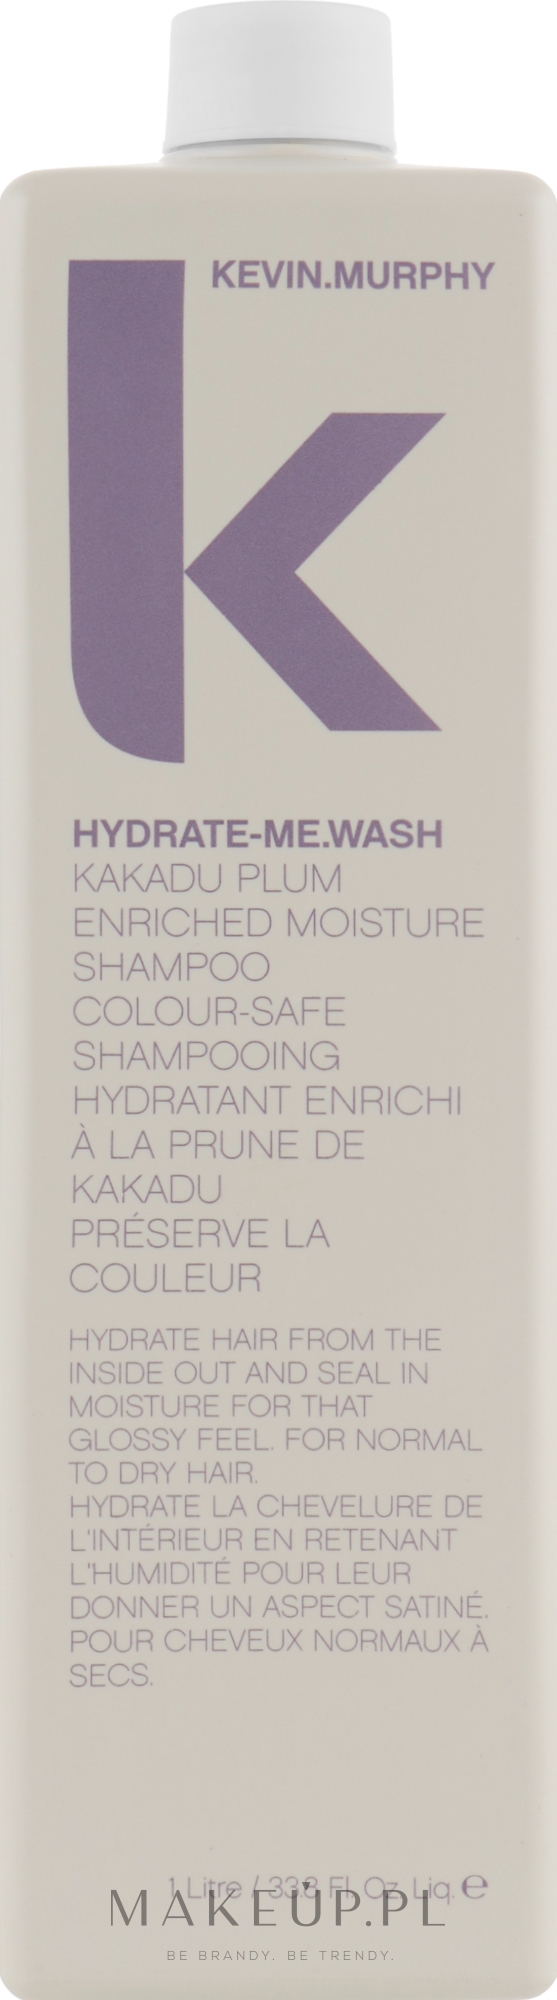 szampon i odżywka kevin murphy hydrate me wash